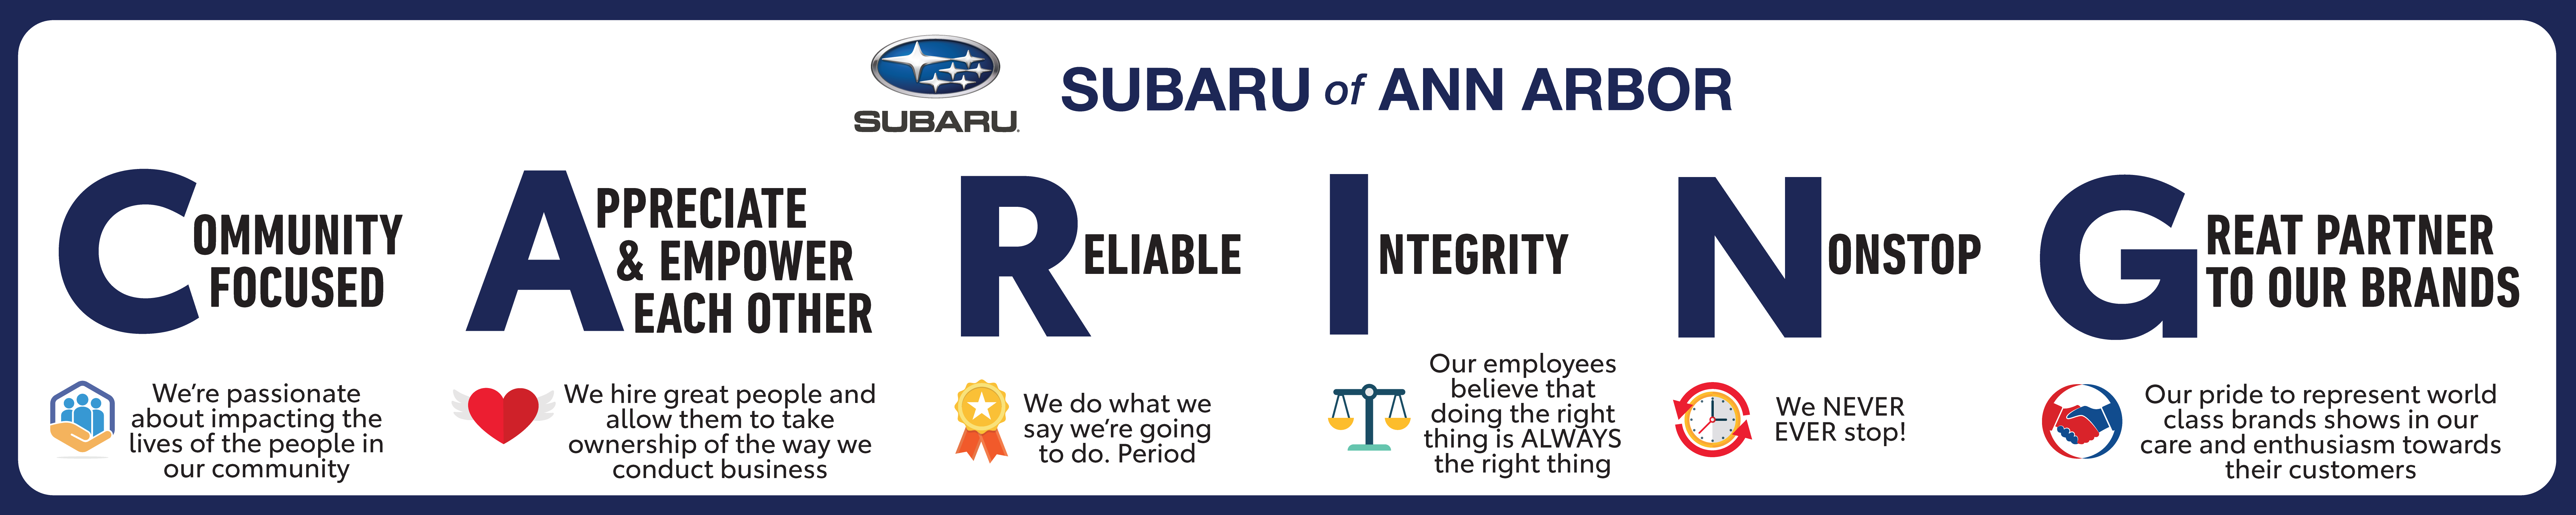 Subaru of Ann Arbor Core Values